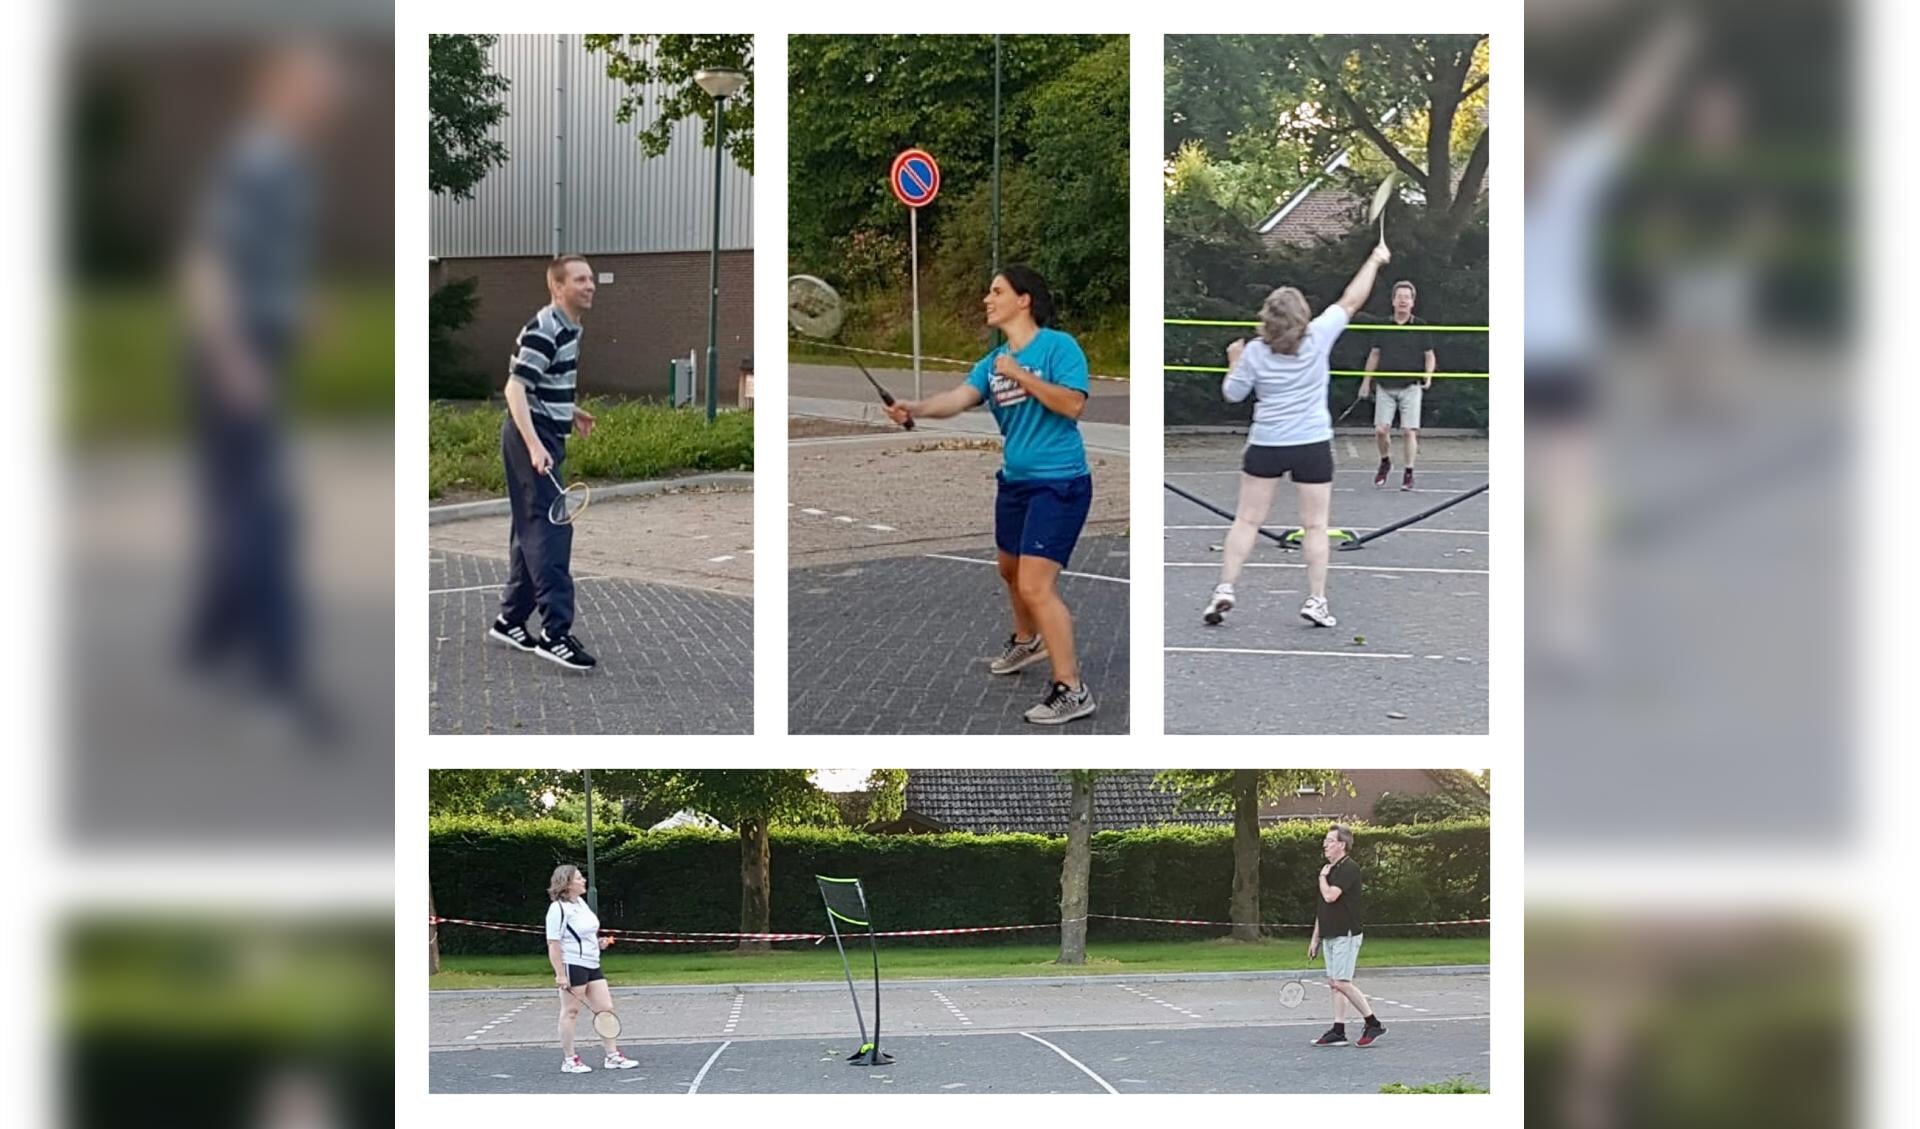 Ook de senioren van Badminton Club Lieshout zijn nu buiten aan het badmintonnen